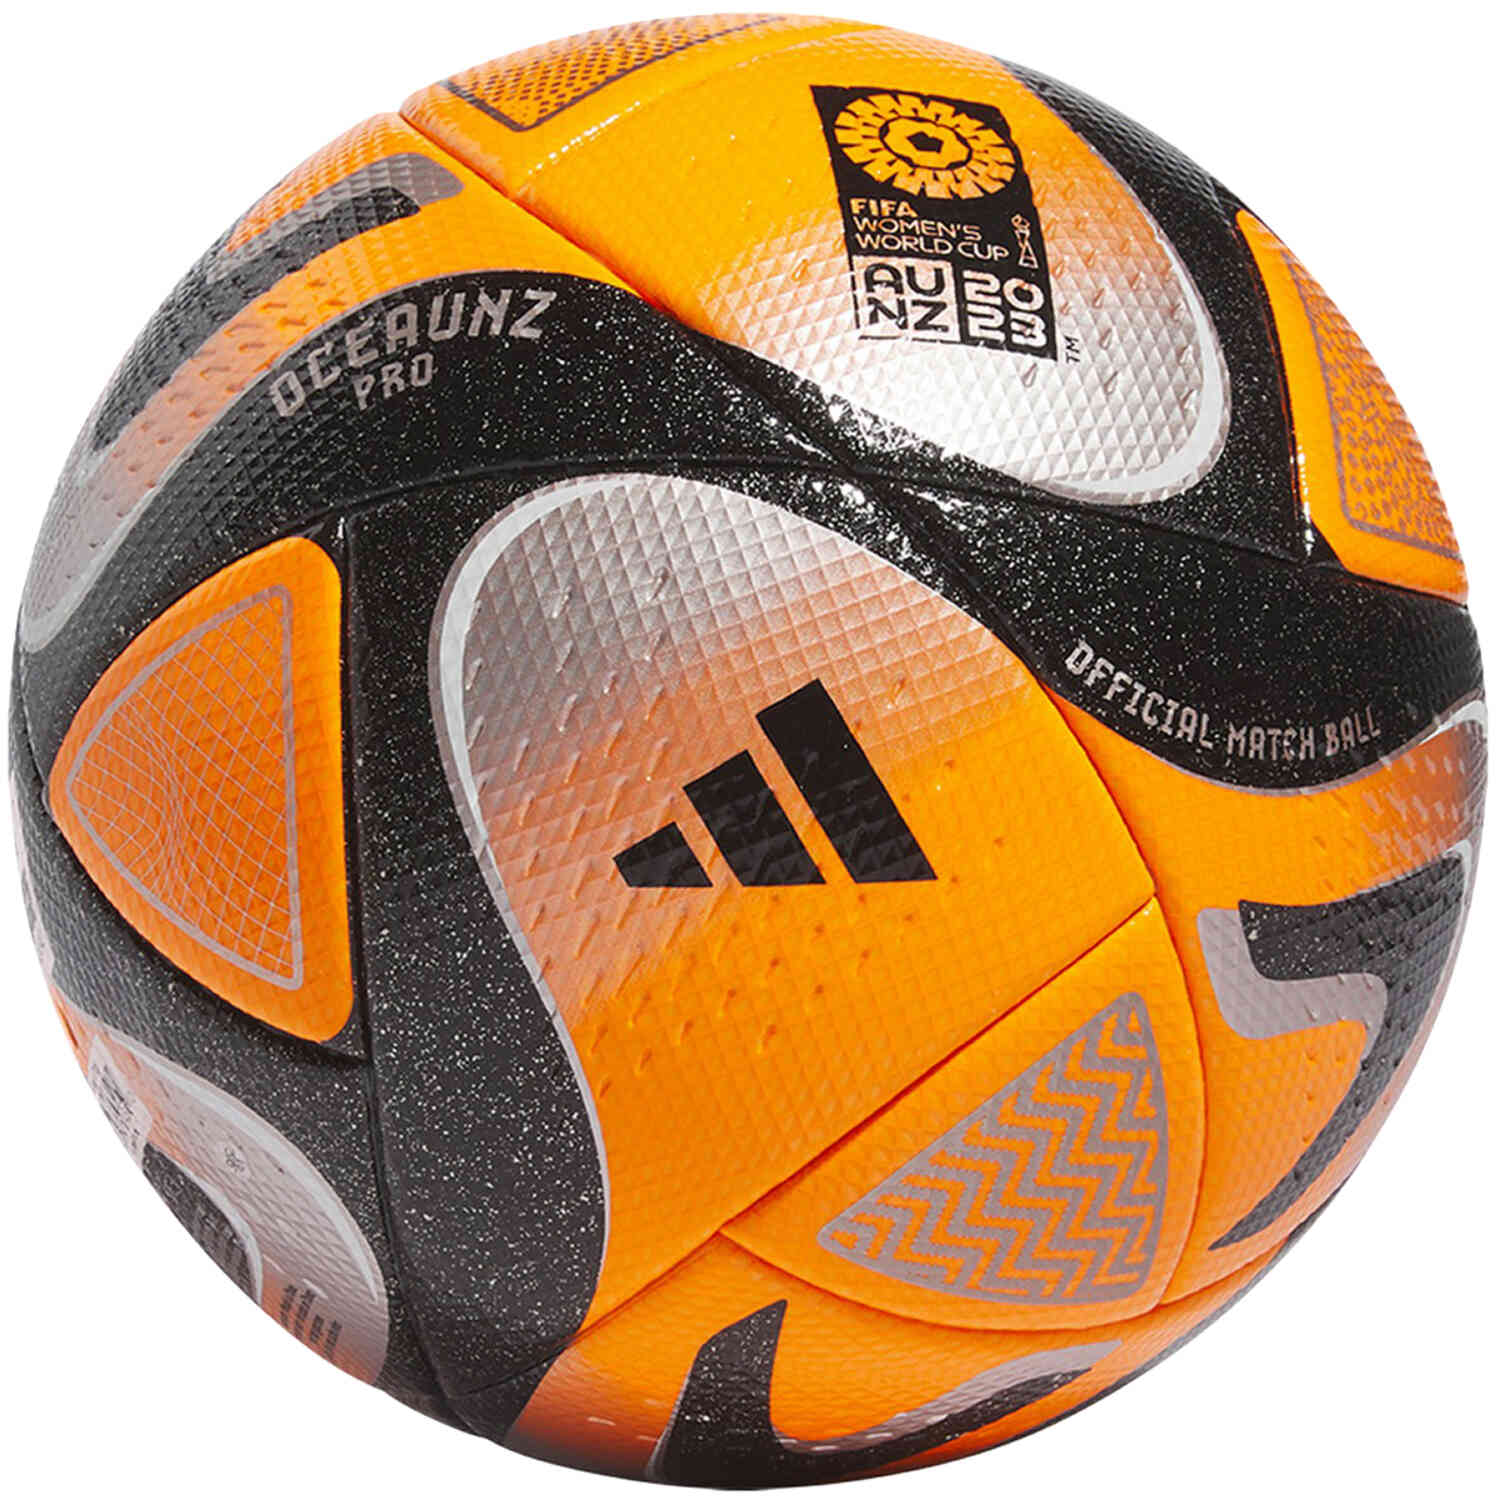 Grey Futbol Boots adidas Soccer Balls - Soccer Master